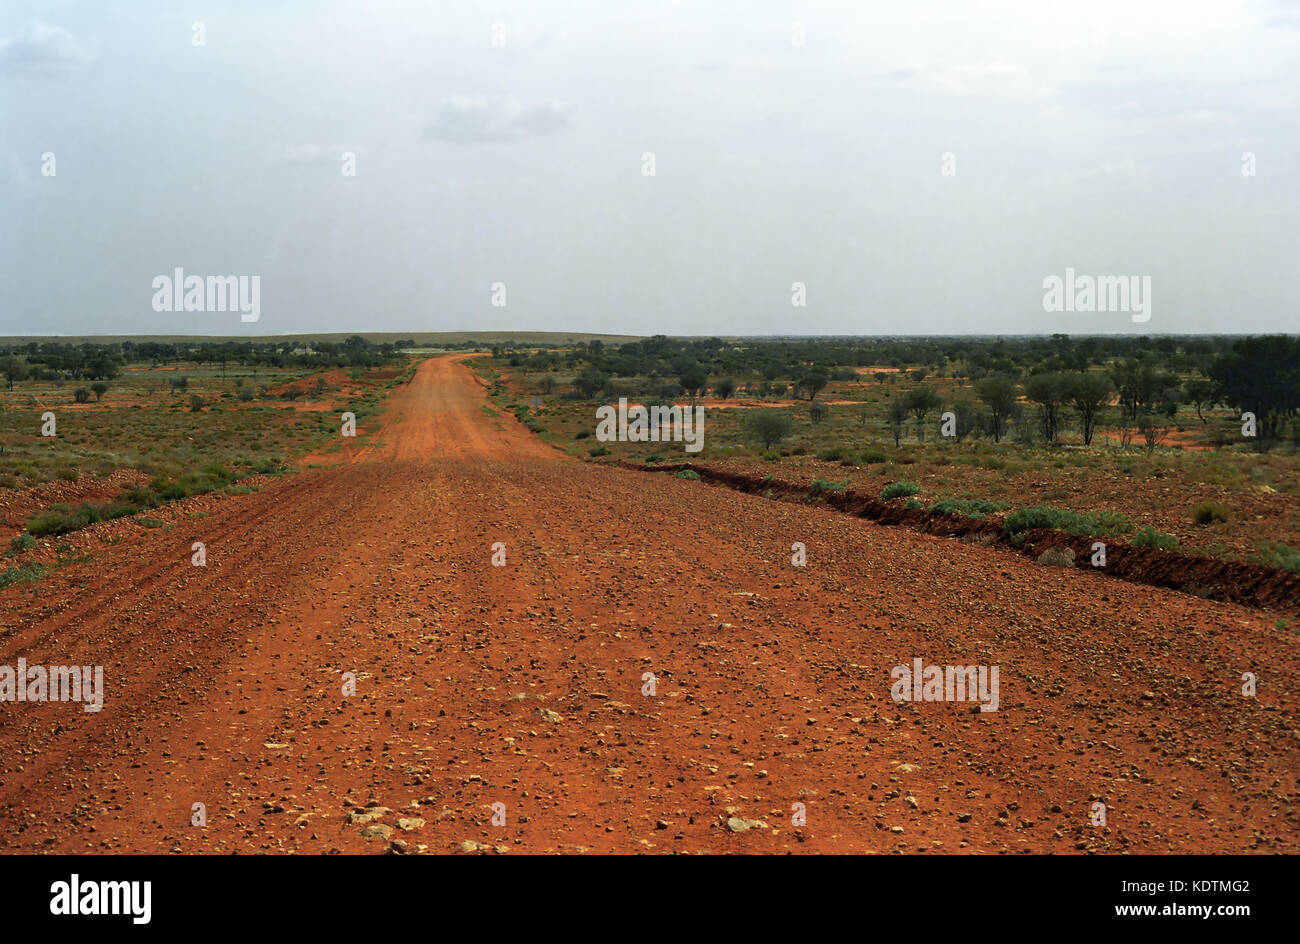 Zurück o'Bourke: Eine leere Red dirt road, die Schnittlinie zwischen Wanaaring und Tibooburra, Outback New South Wales, Australien. Stockfoto